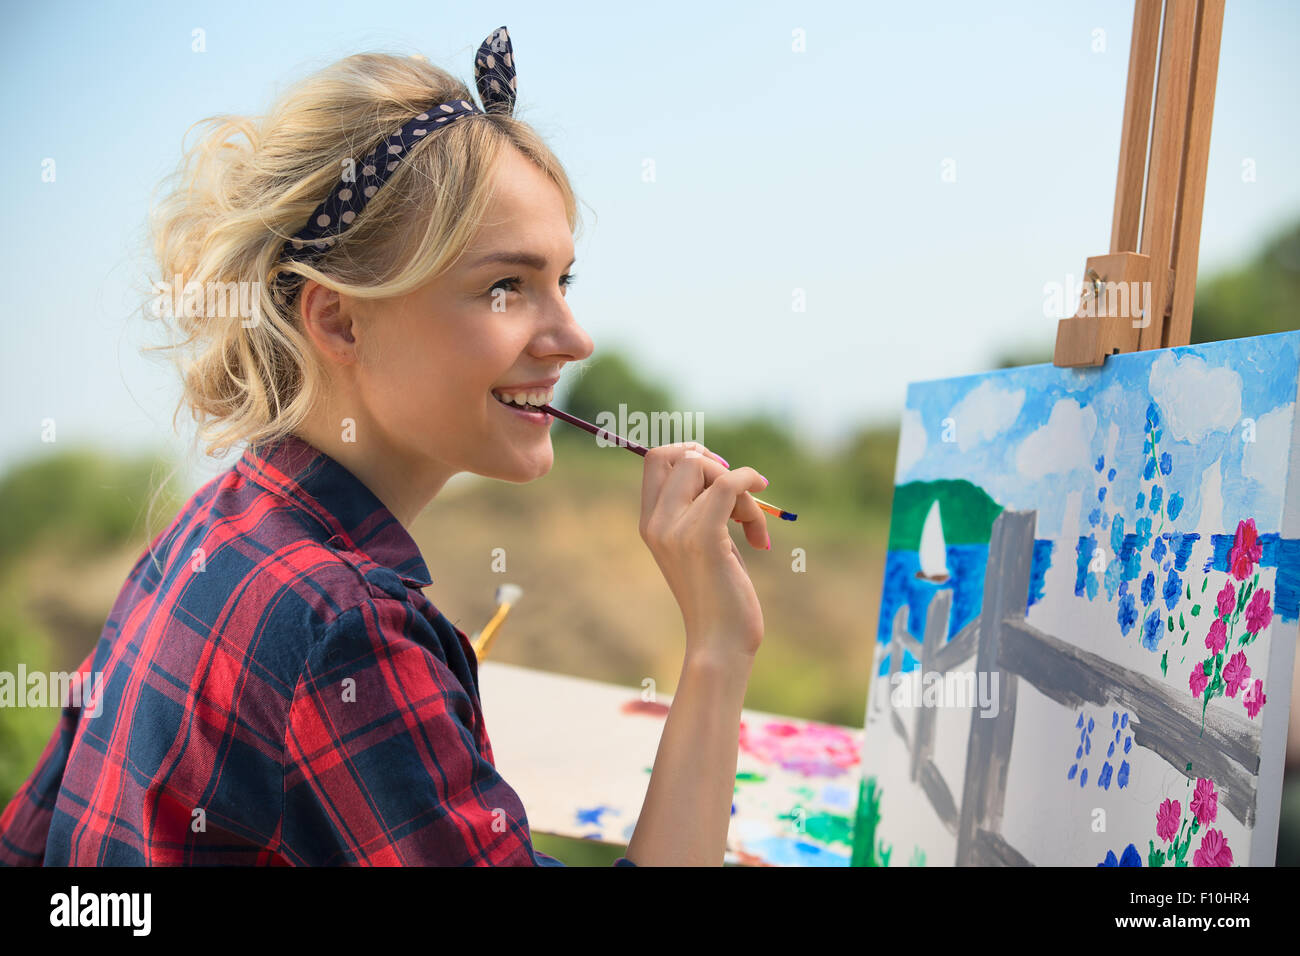 Belle blonde femme artiste peint une image colorée. Banque D'Images